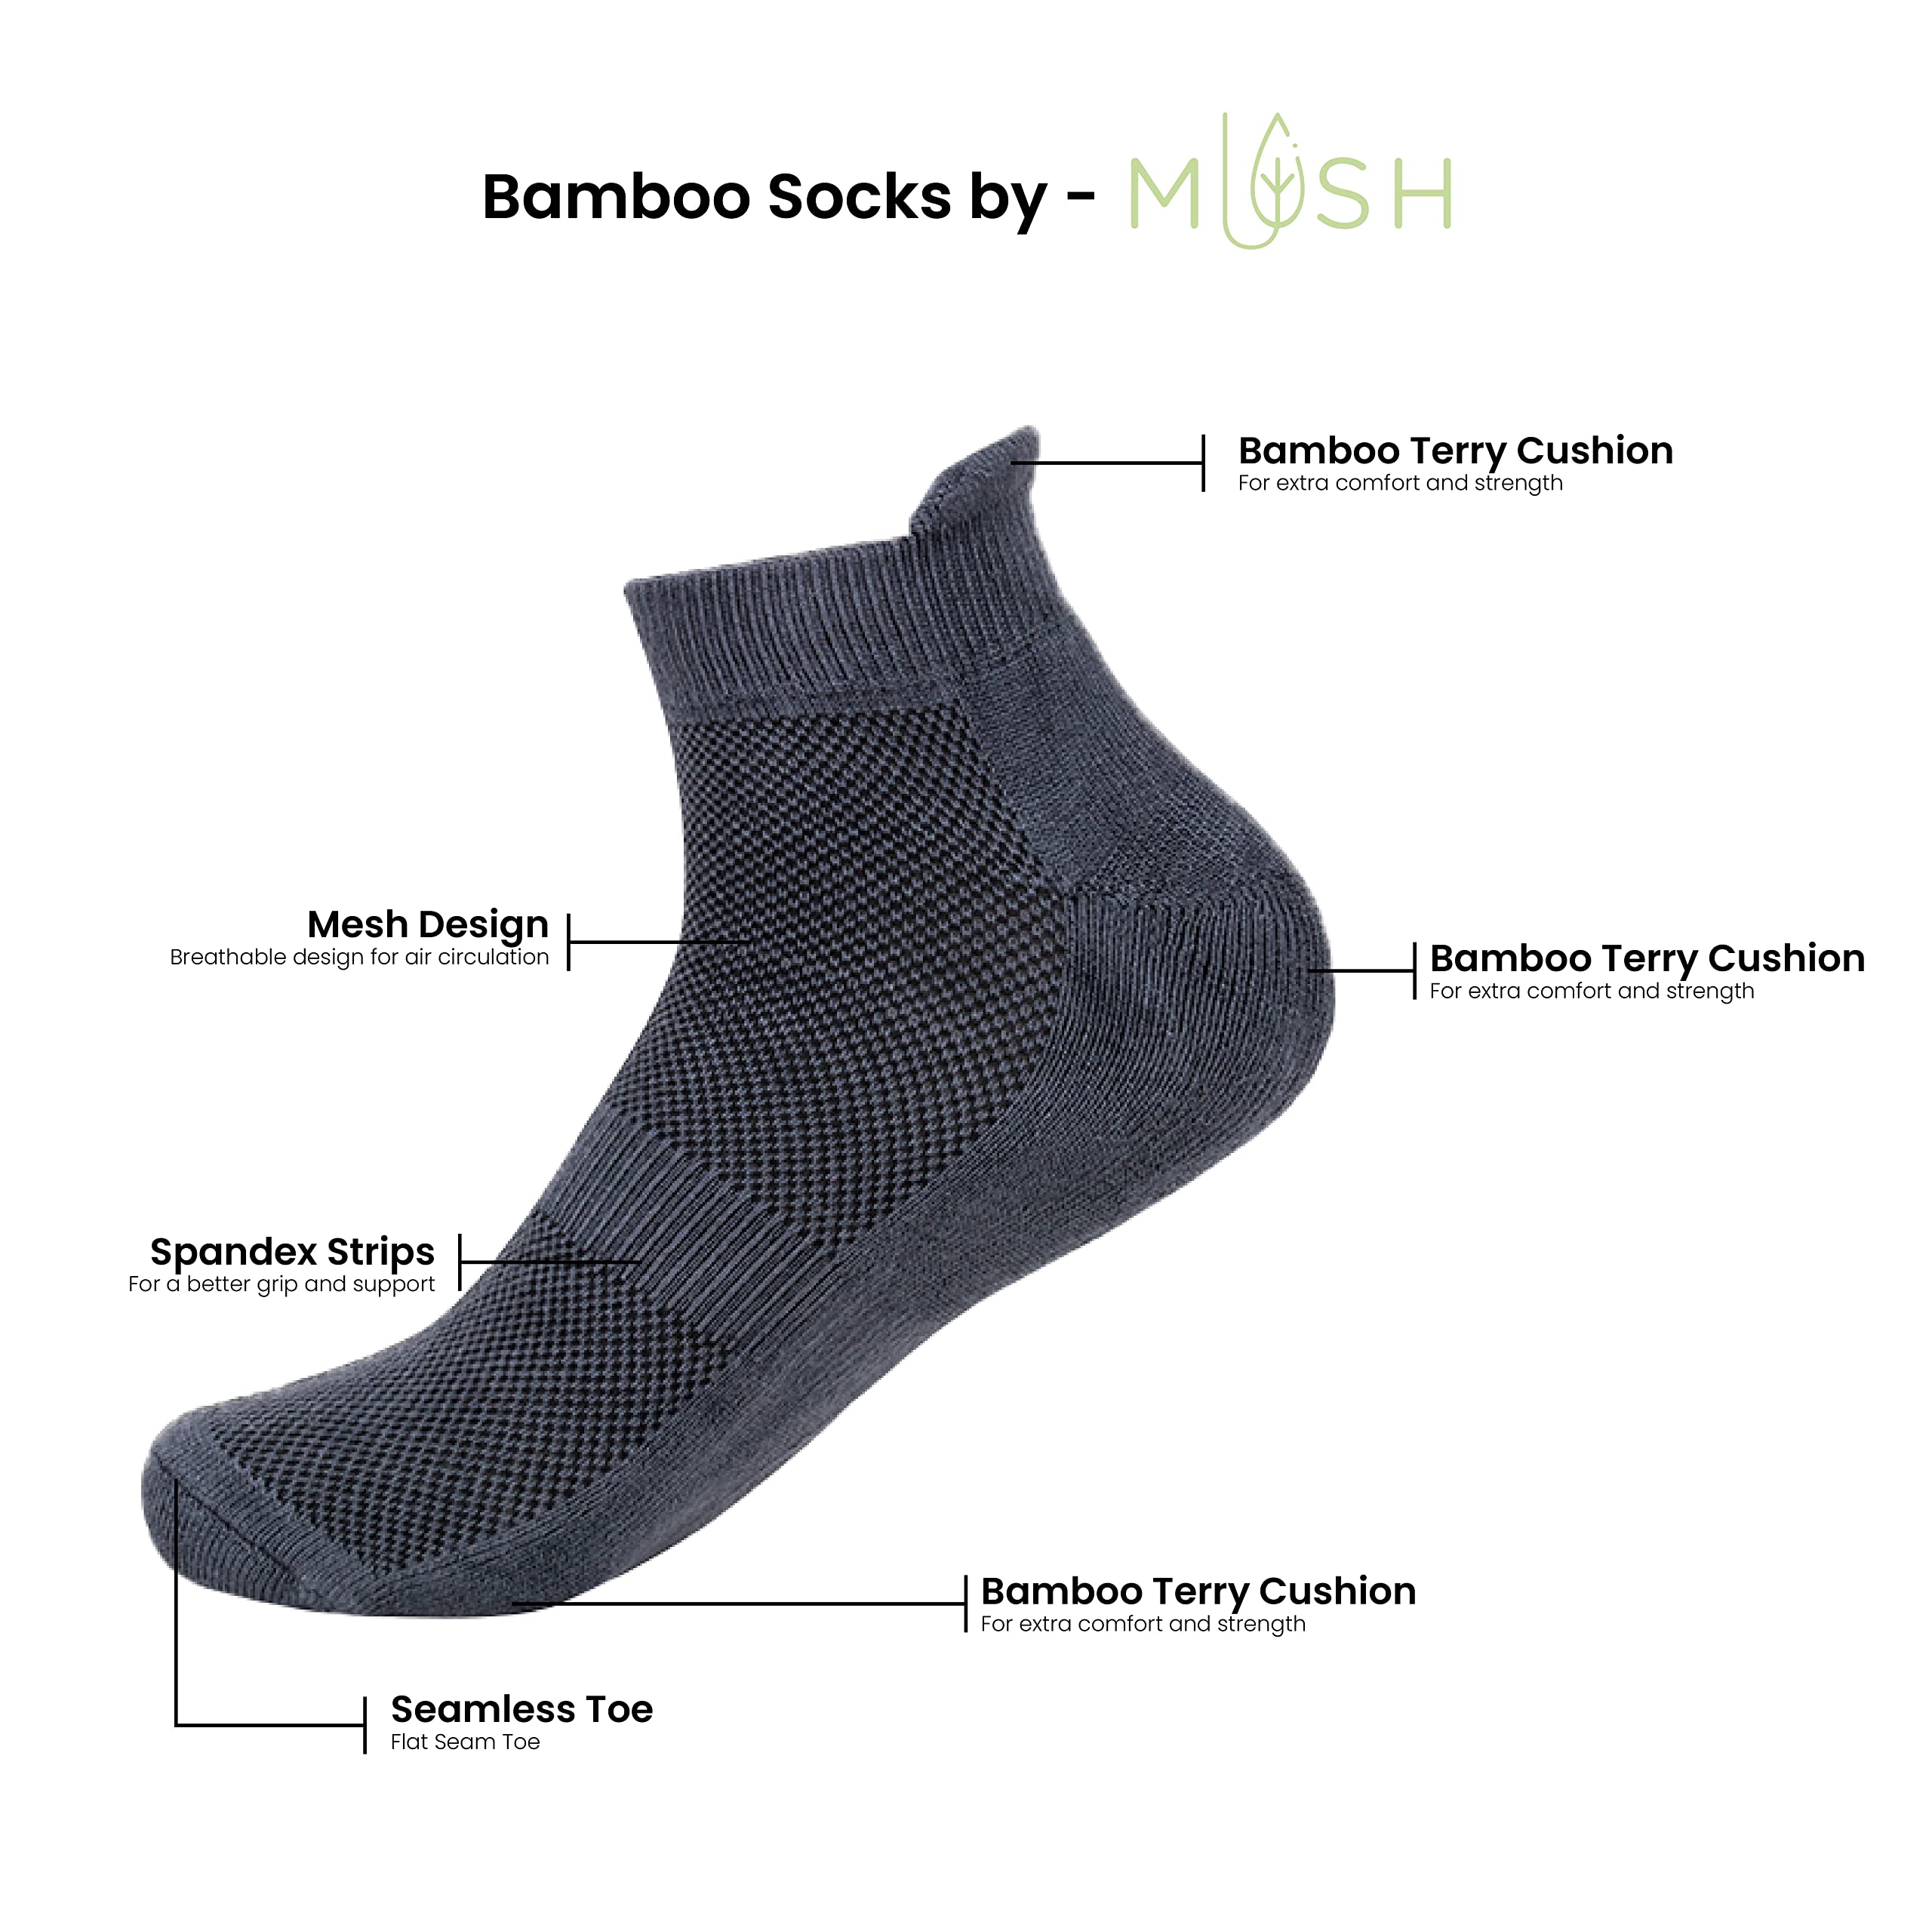 Mush Bamboo Fibre Ultra Soft, Anti Odor, Breathable, Anti Blister Ankle Length Socks for Men & Women for Running, Sports & Gym (Pack of 3) Free Size (Black, Dark Grey, White, 3)